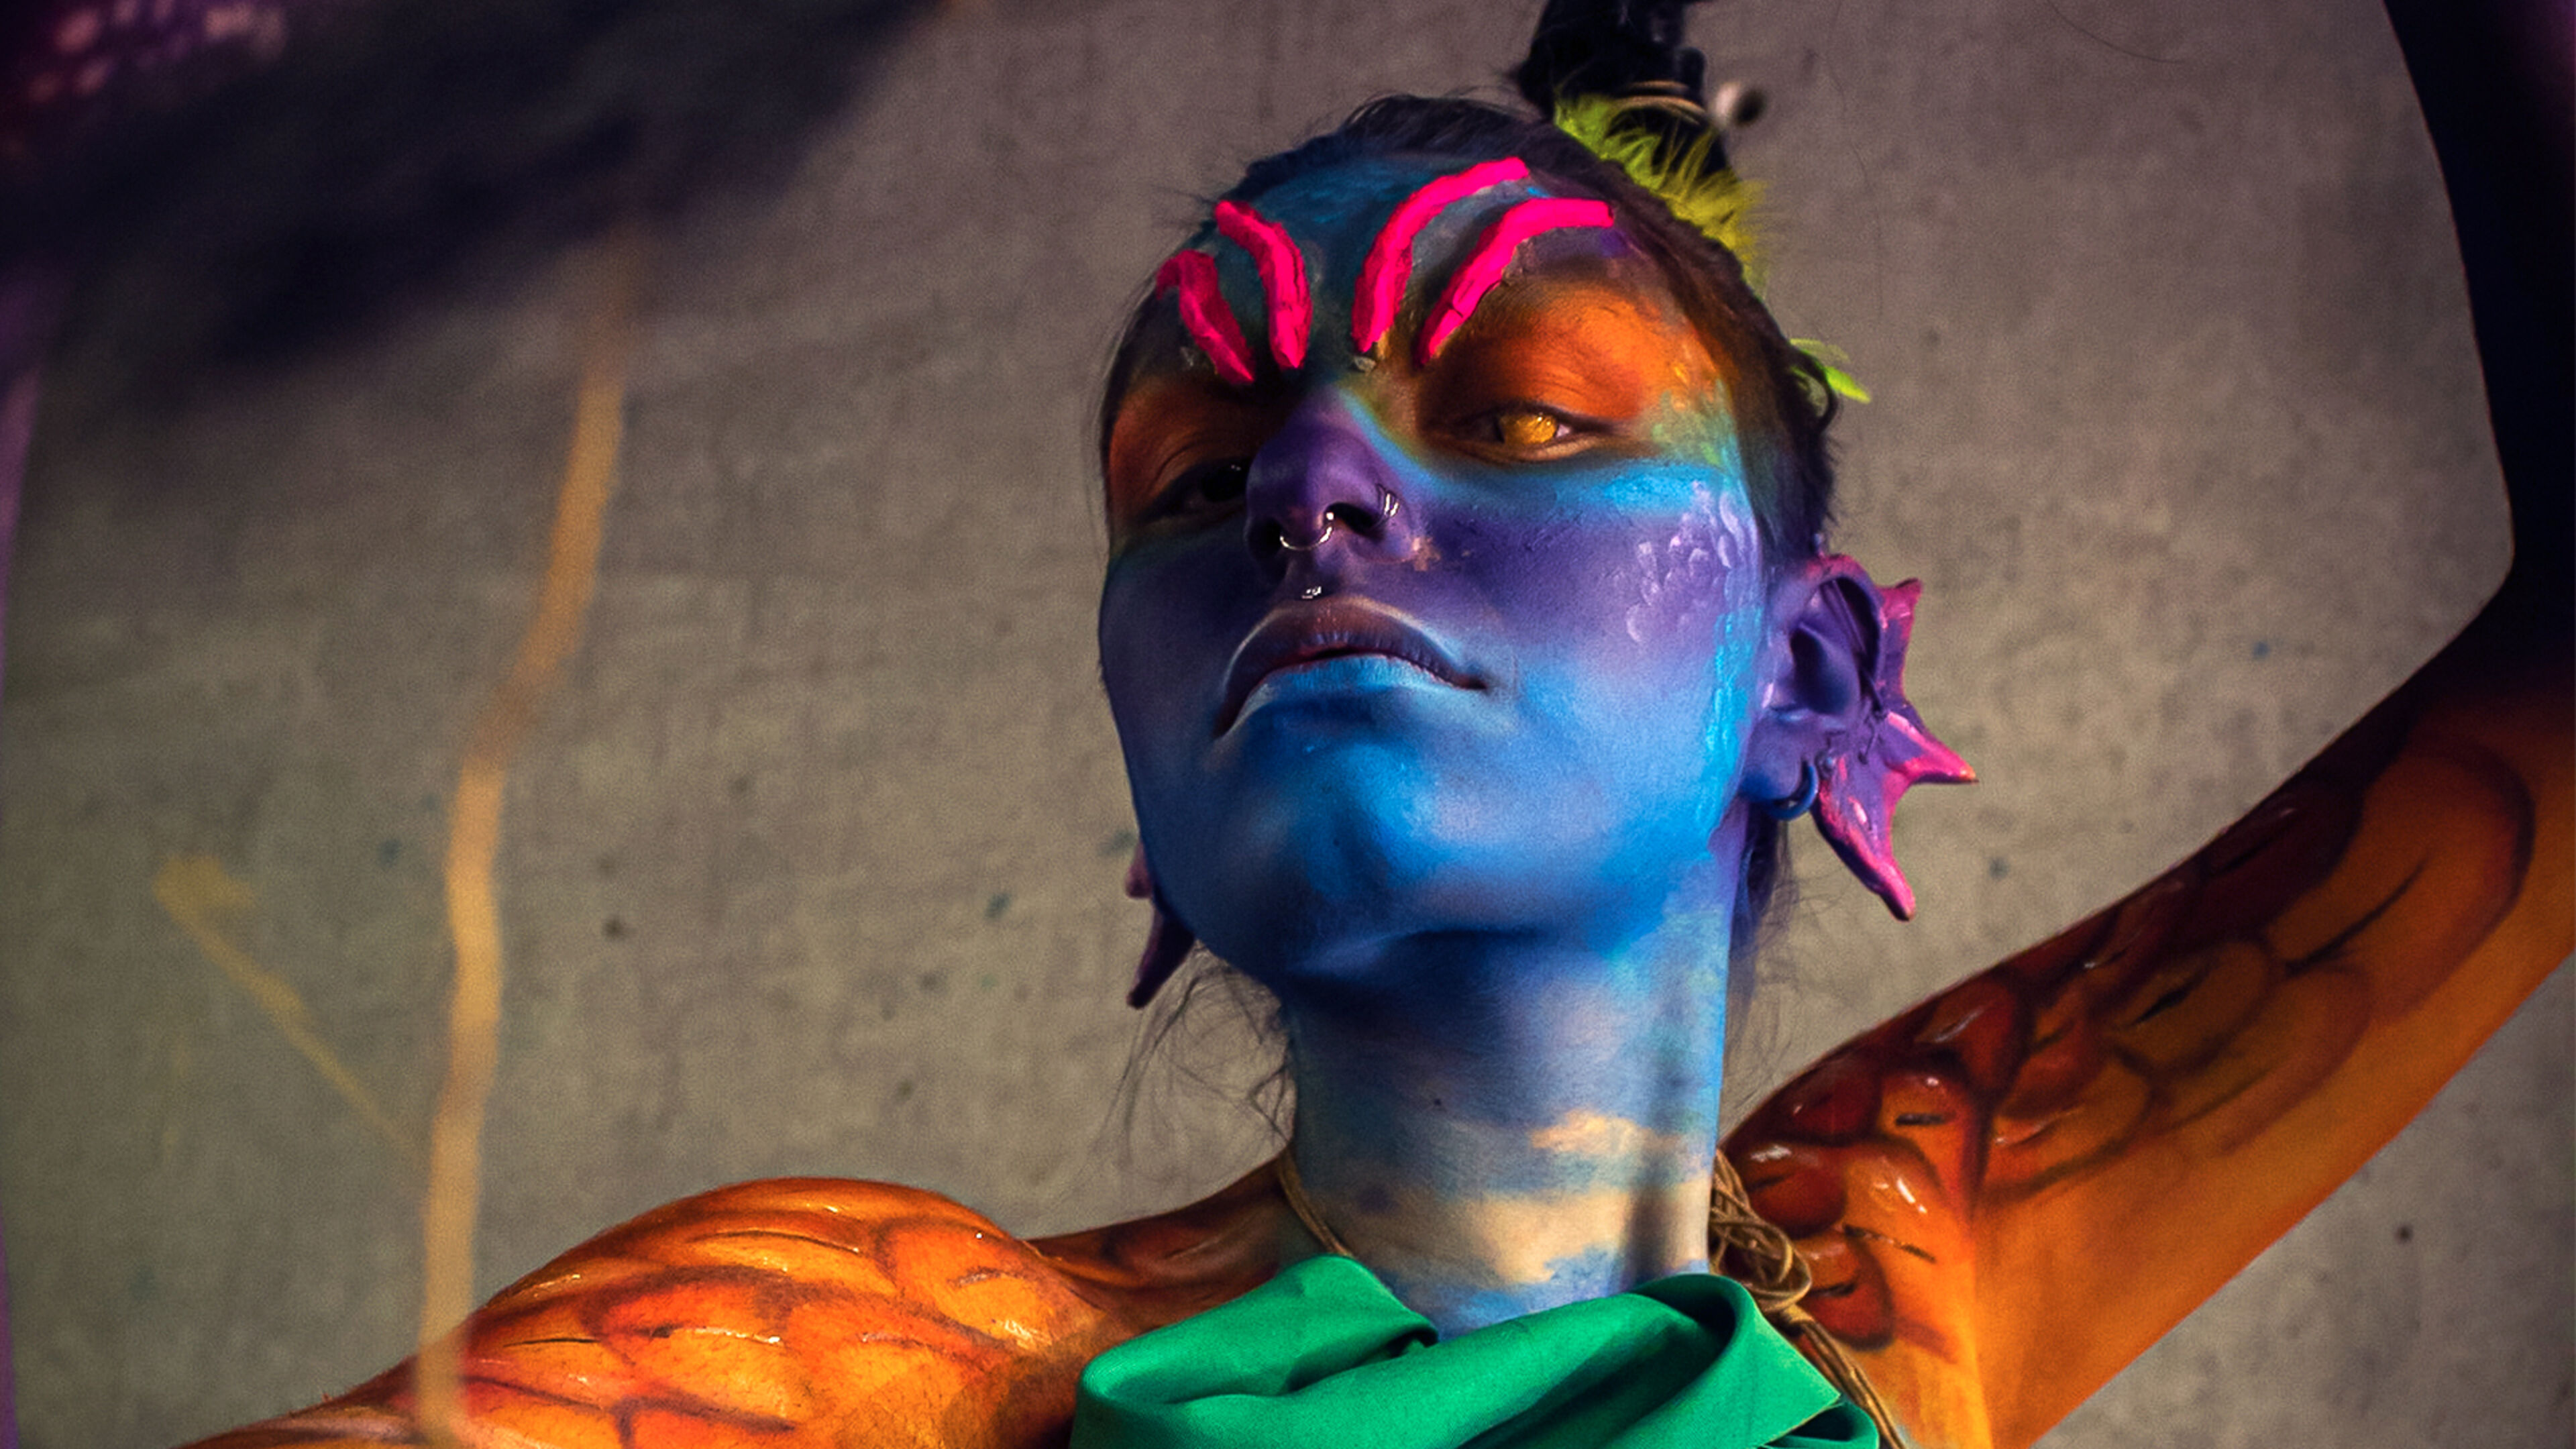 Una persona con pintura corporal espectacular en colores vivos, fusionando el arte con la forma humana.